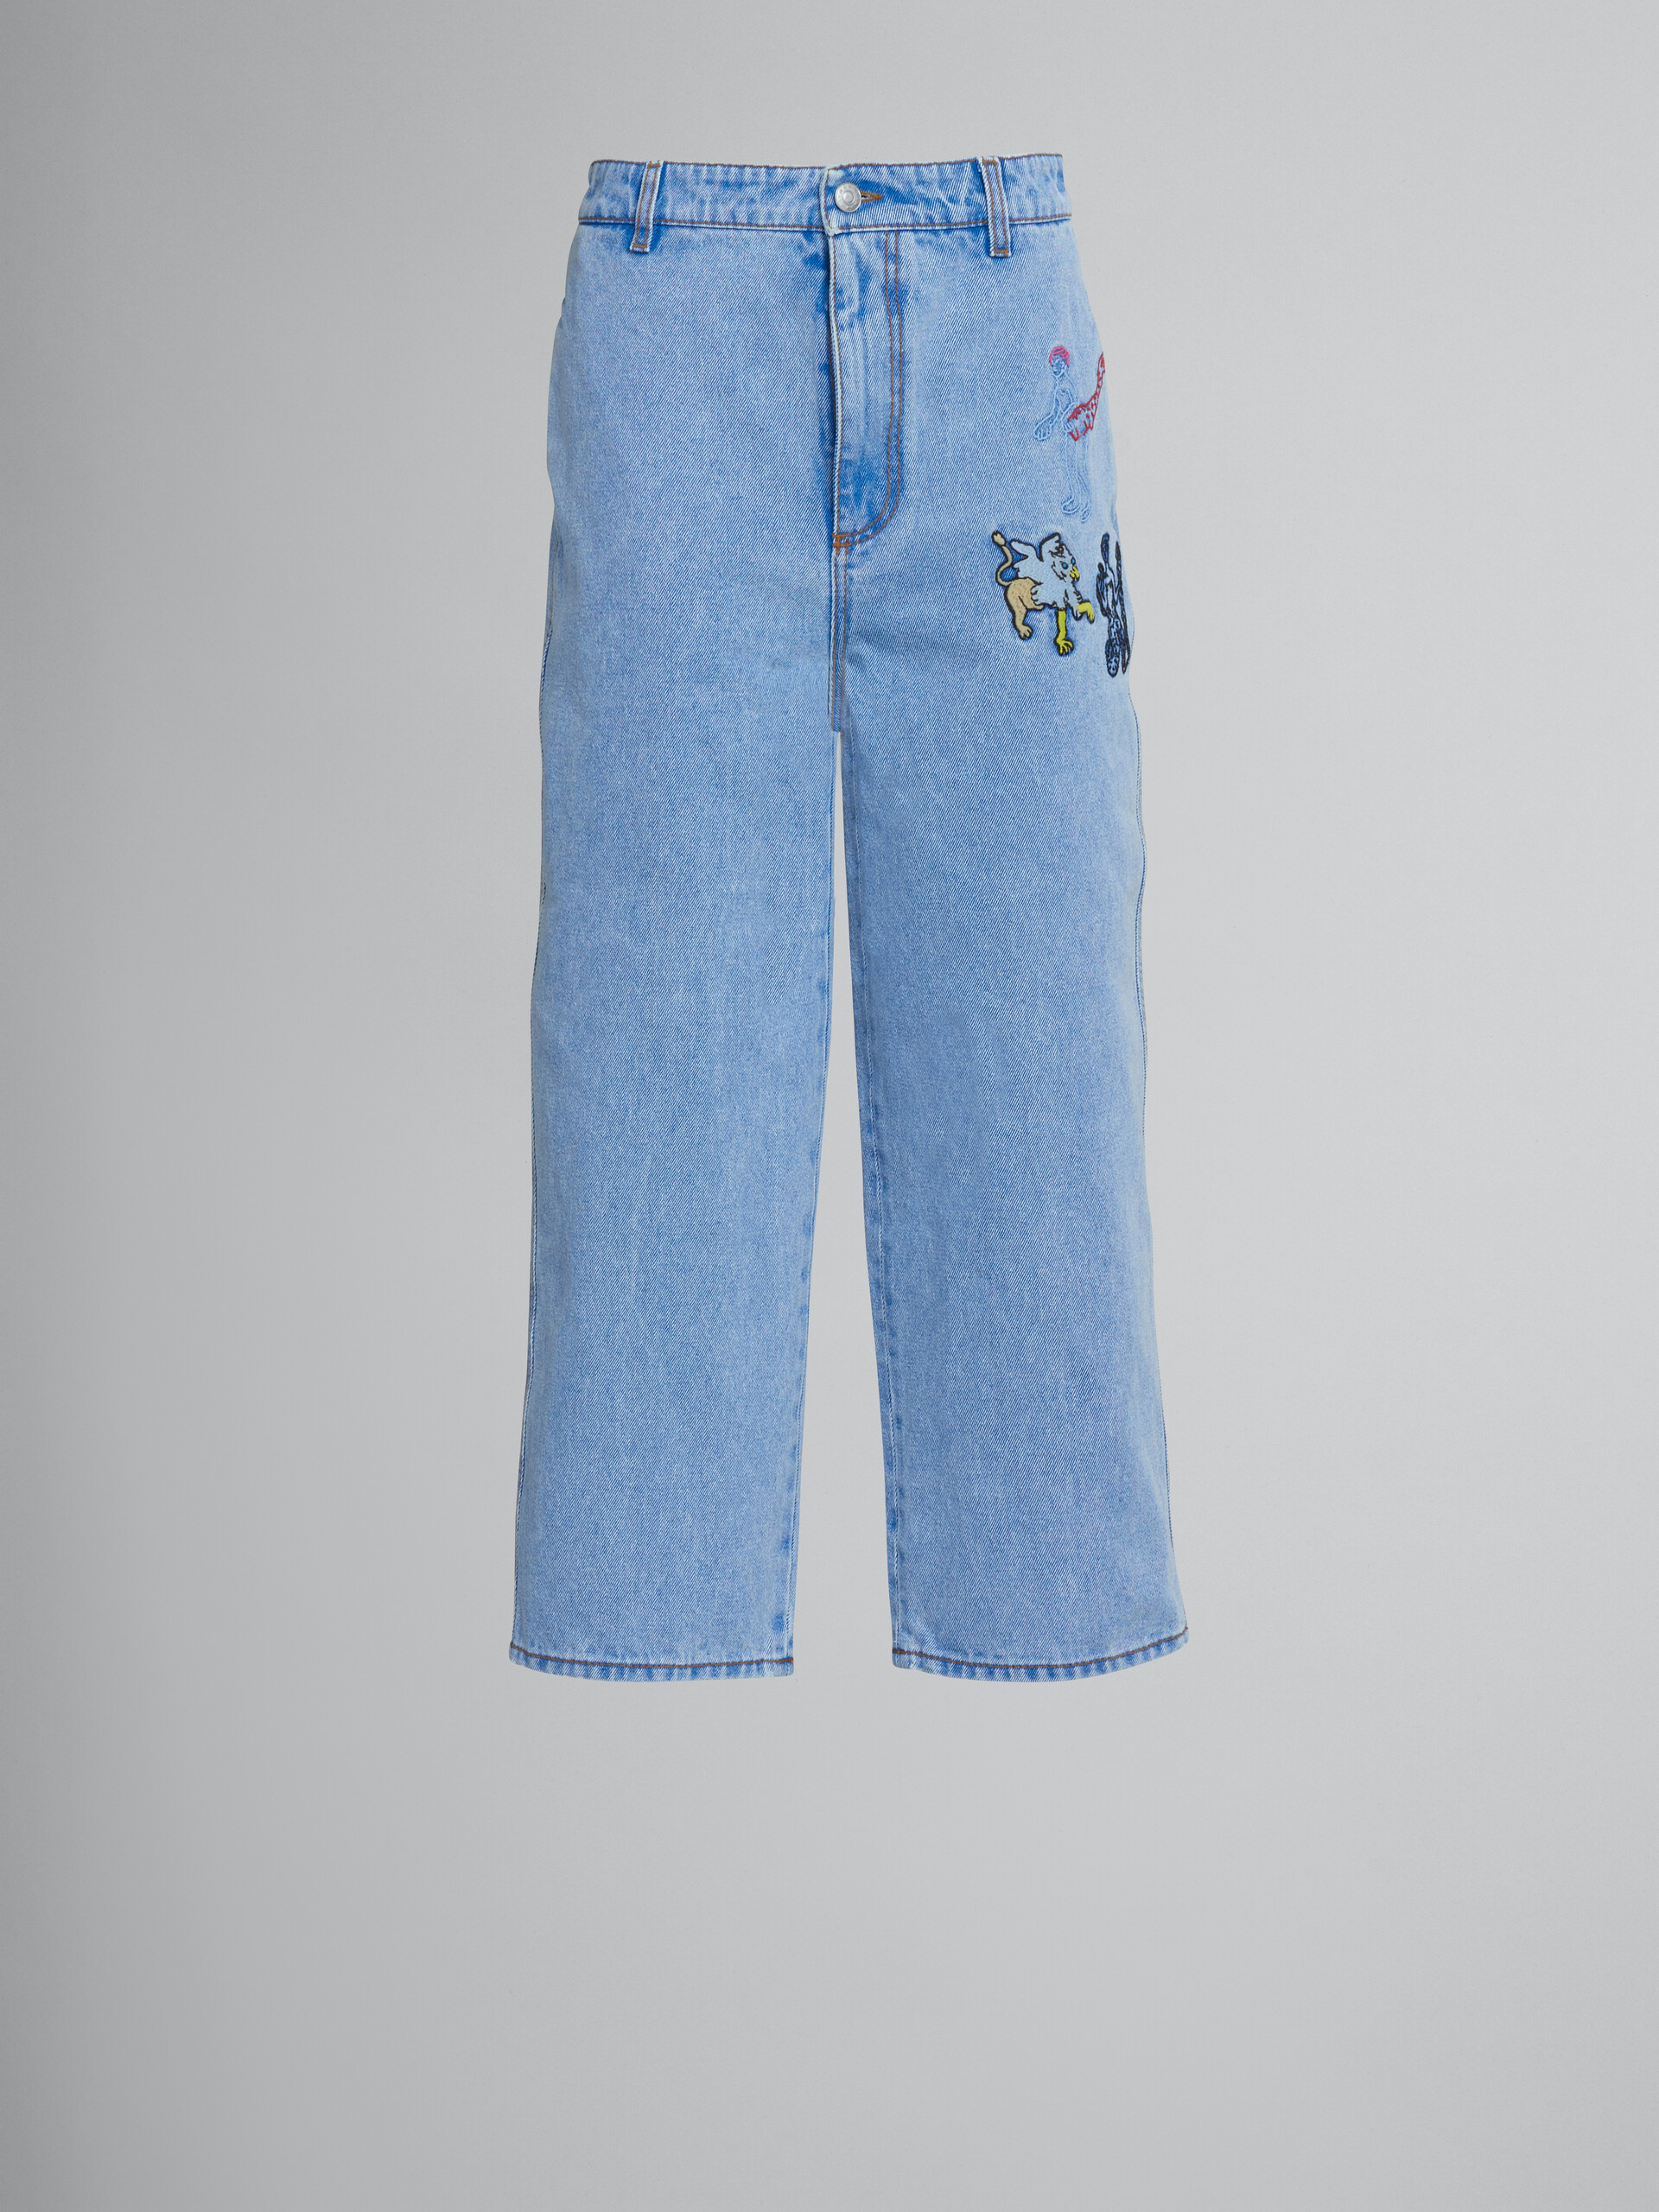 Weite, hellblaue Jeans mit Stickerei - Hosen - Image 1